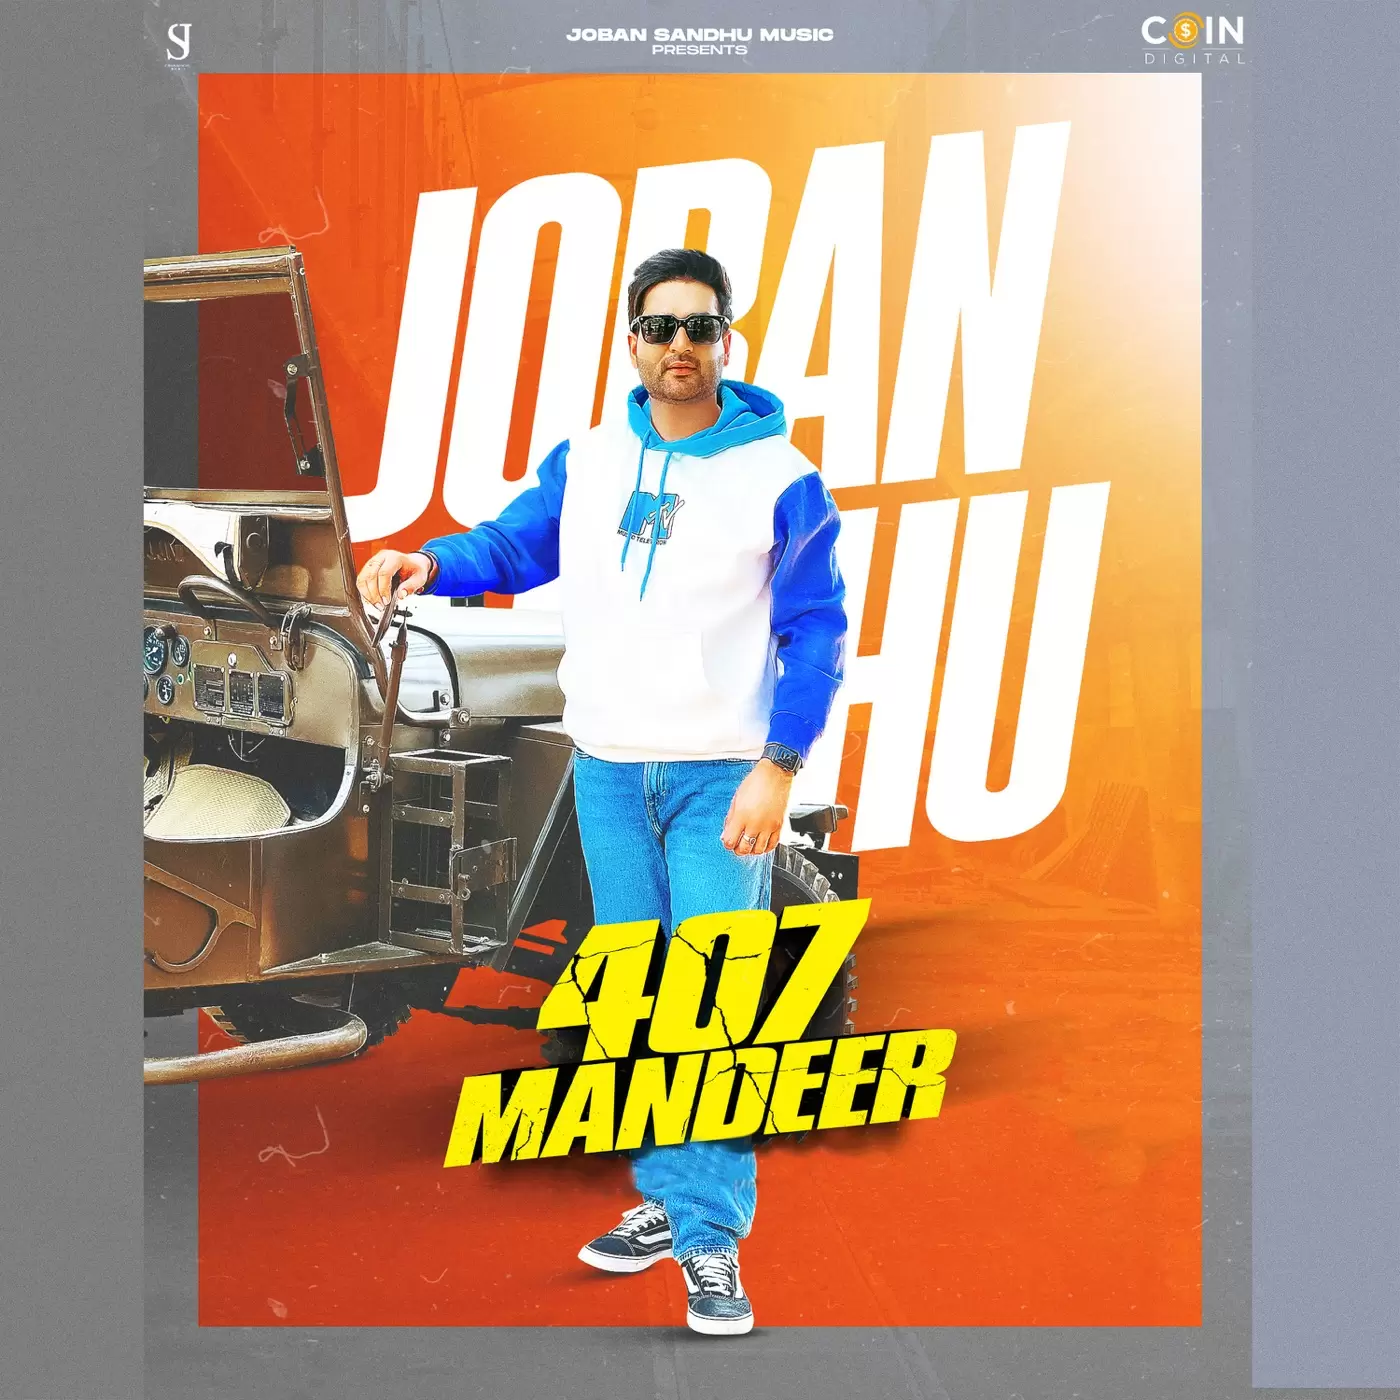 407 Mandeer - Single Song by Joban Sandhu - Mr-Punjab